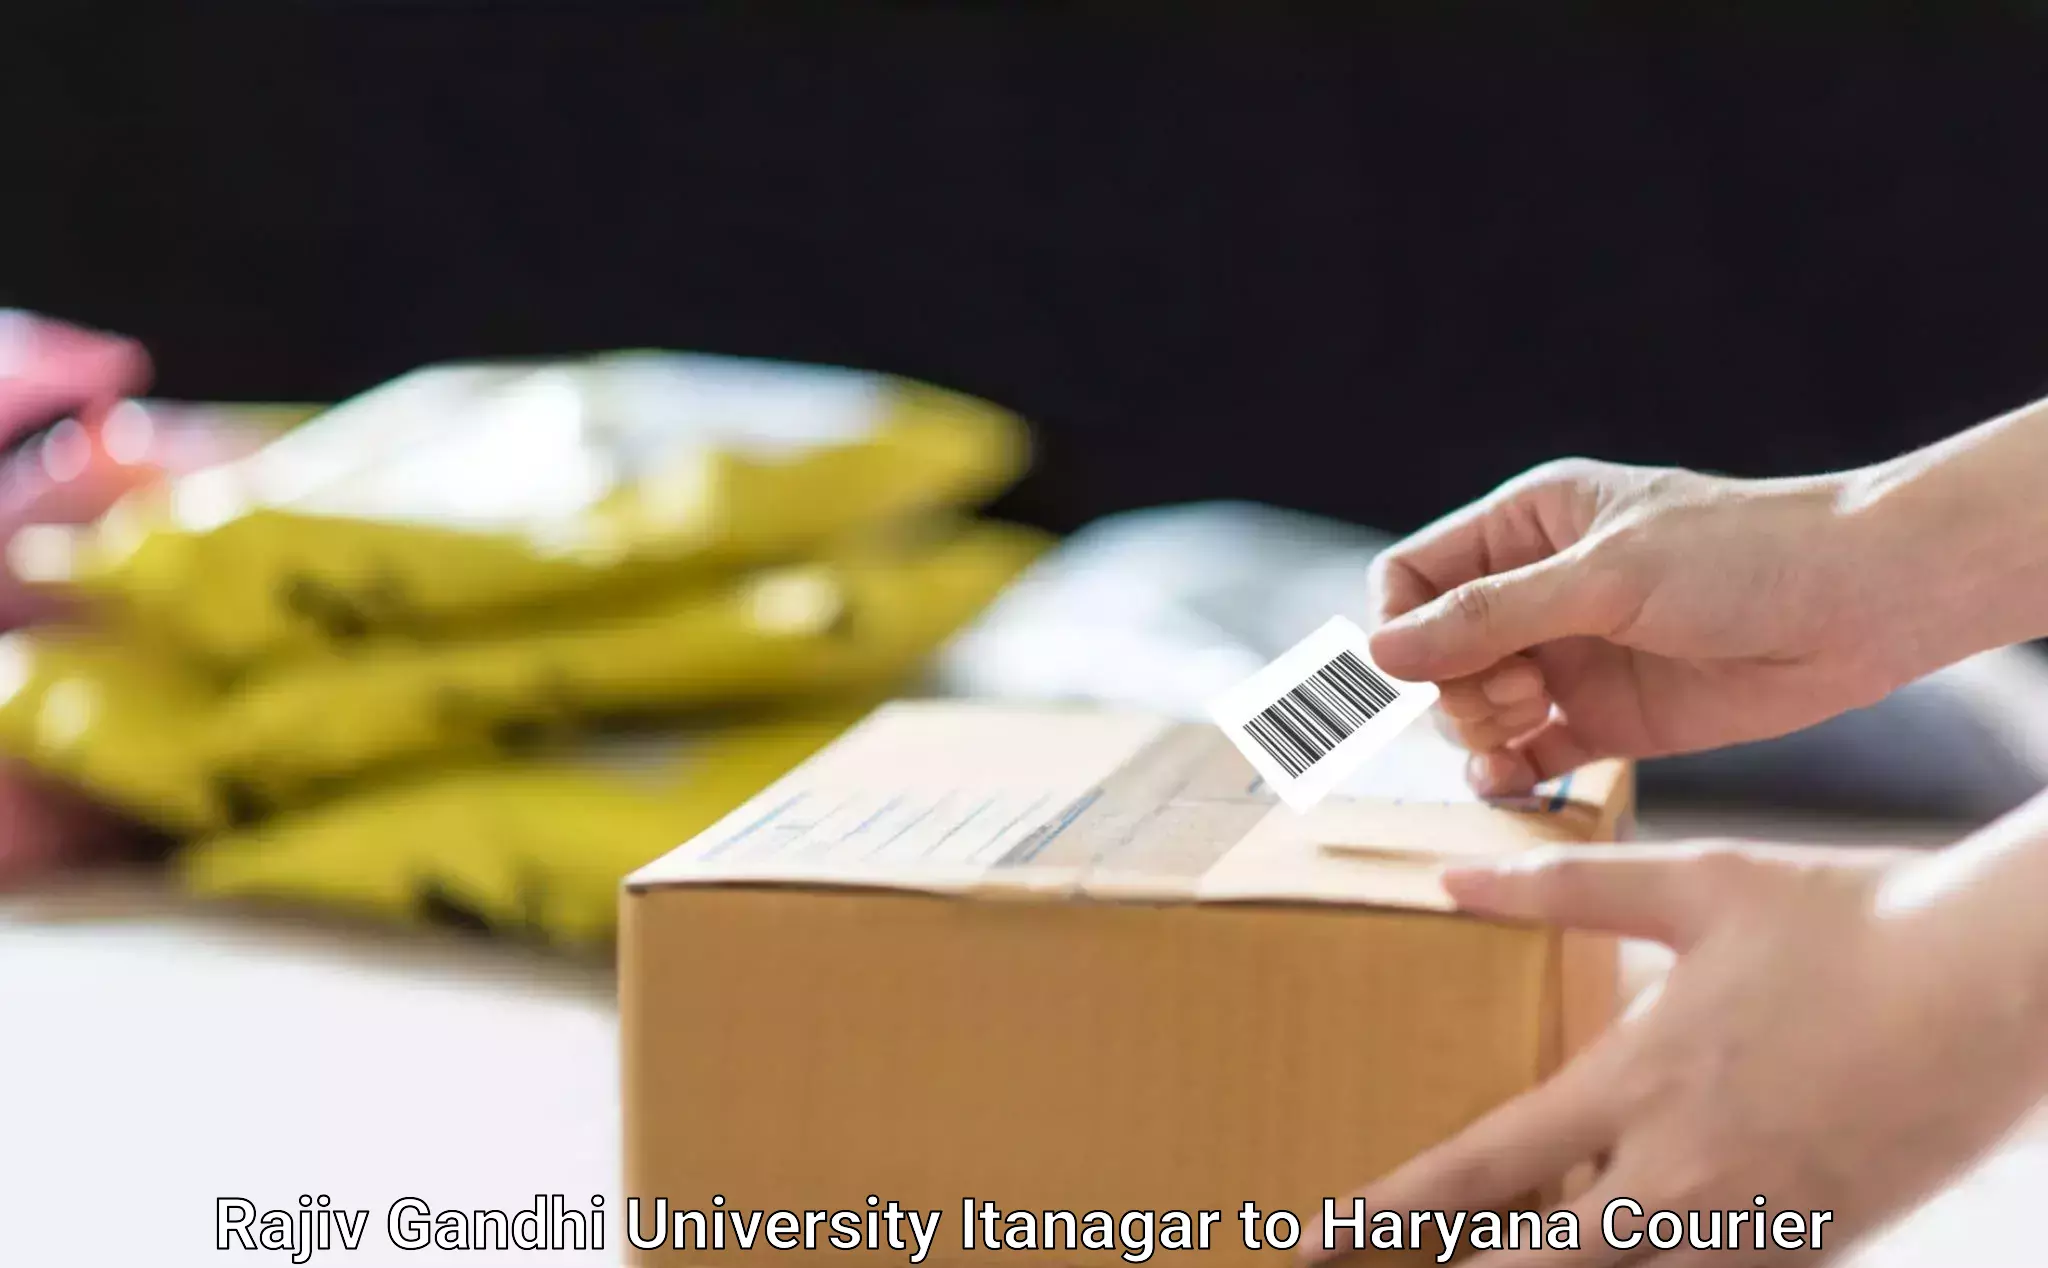 Package delivery network Rajiv Gandhi University Itanagar to Panchkula